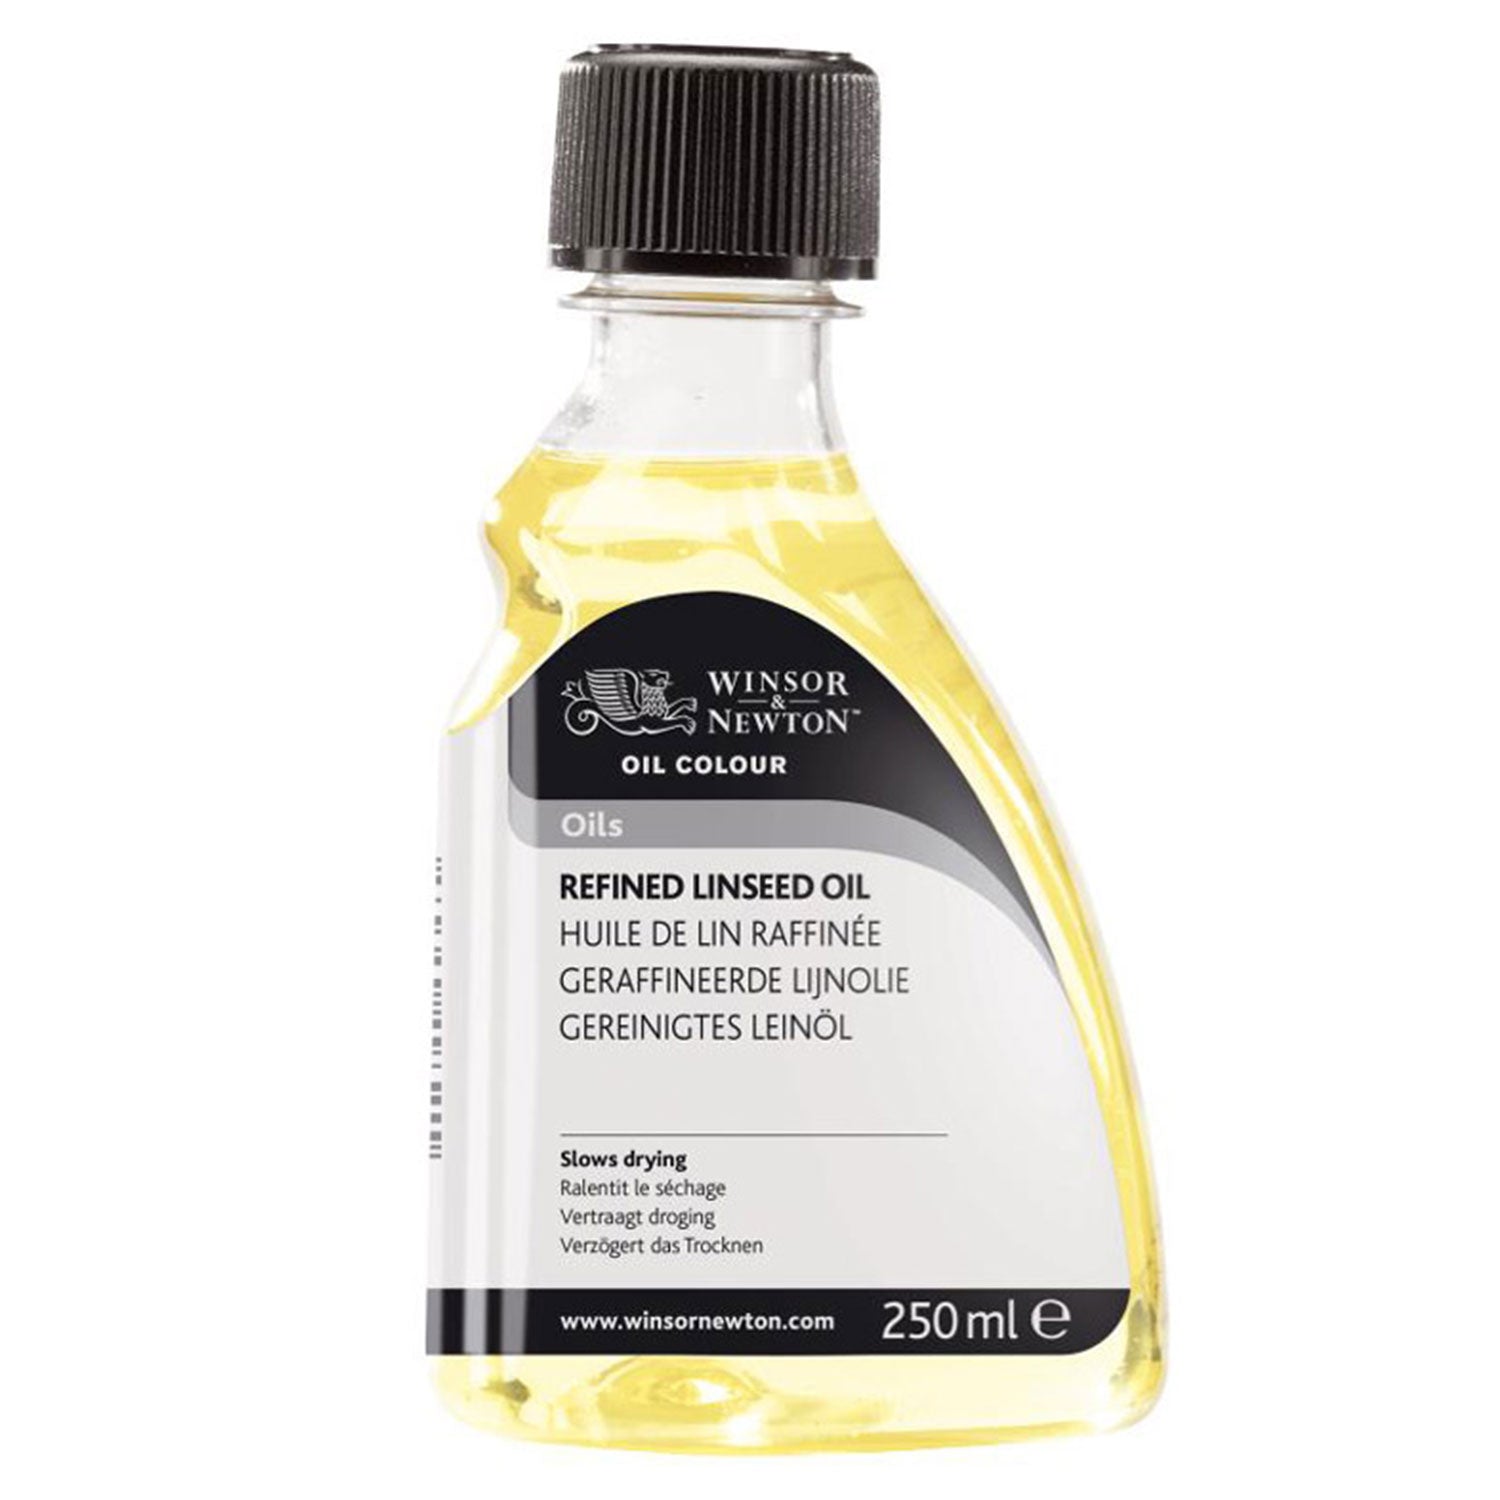 Winsor & Newton Refined Linseed Oil - 250ml Bottle